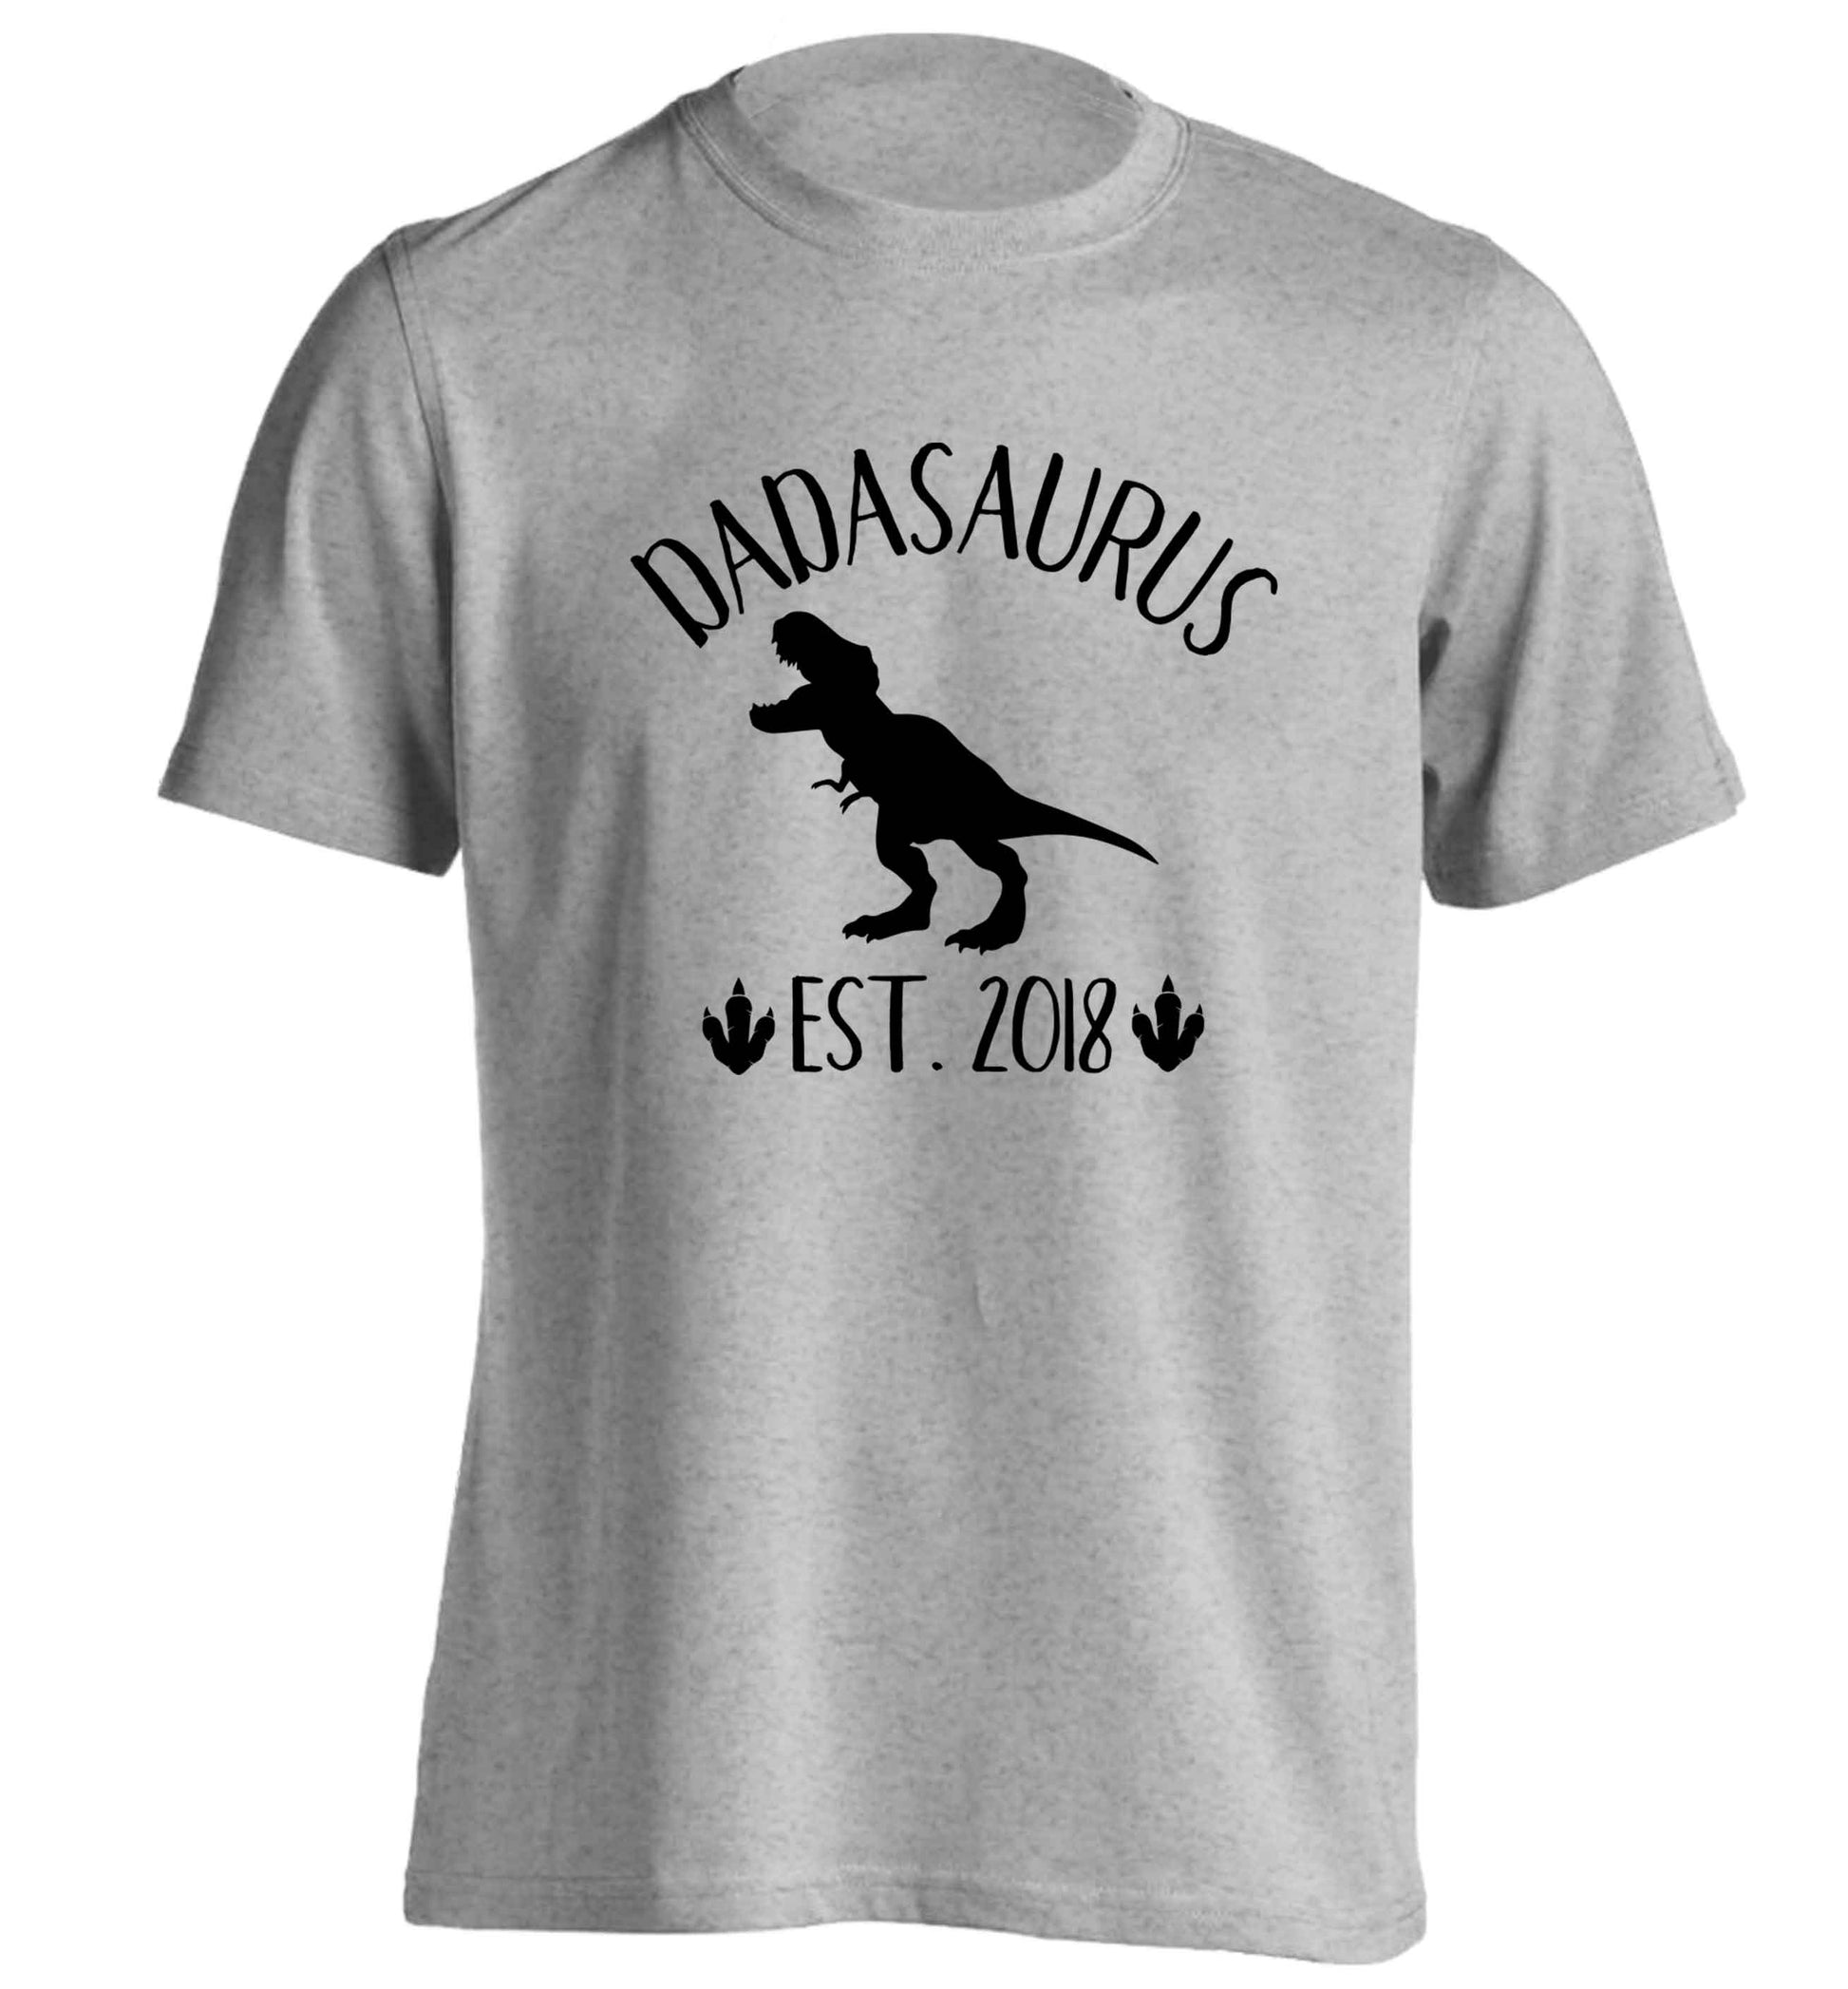 Personalised dadasaurus since (custom date) adults unisex grey Tshirt 2XL